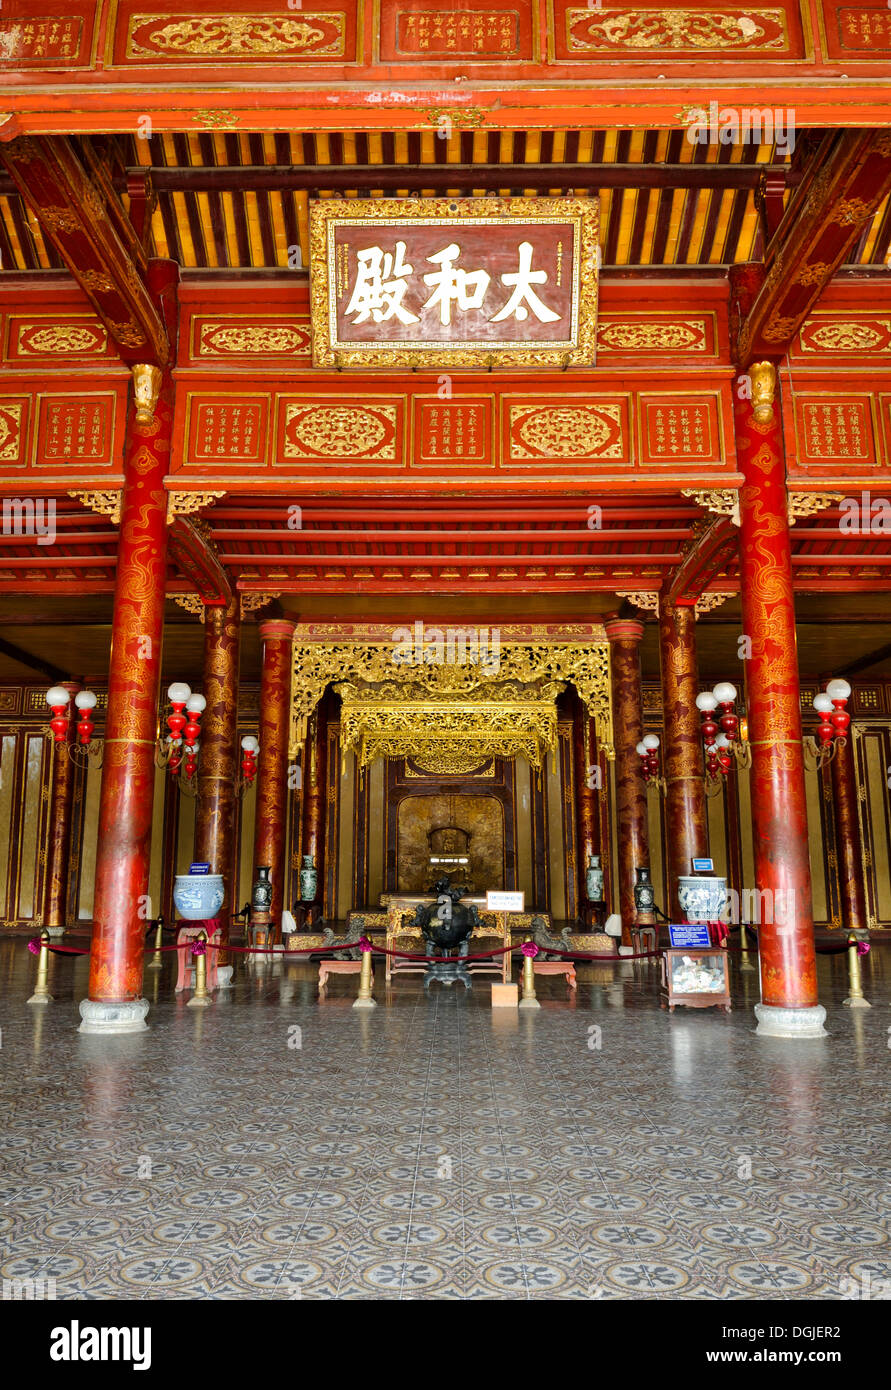 Salle du trône le palais Thai Hoa, Hoang Thanh, palais impérial de la Cité Interdite, Hue, UNESCO World Heritage Site, Vietnam, Asie Banque D'Images